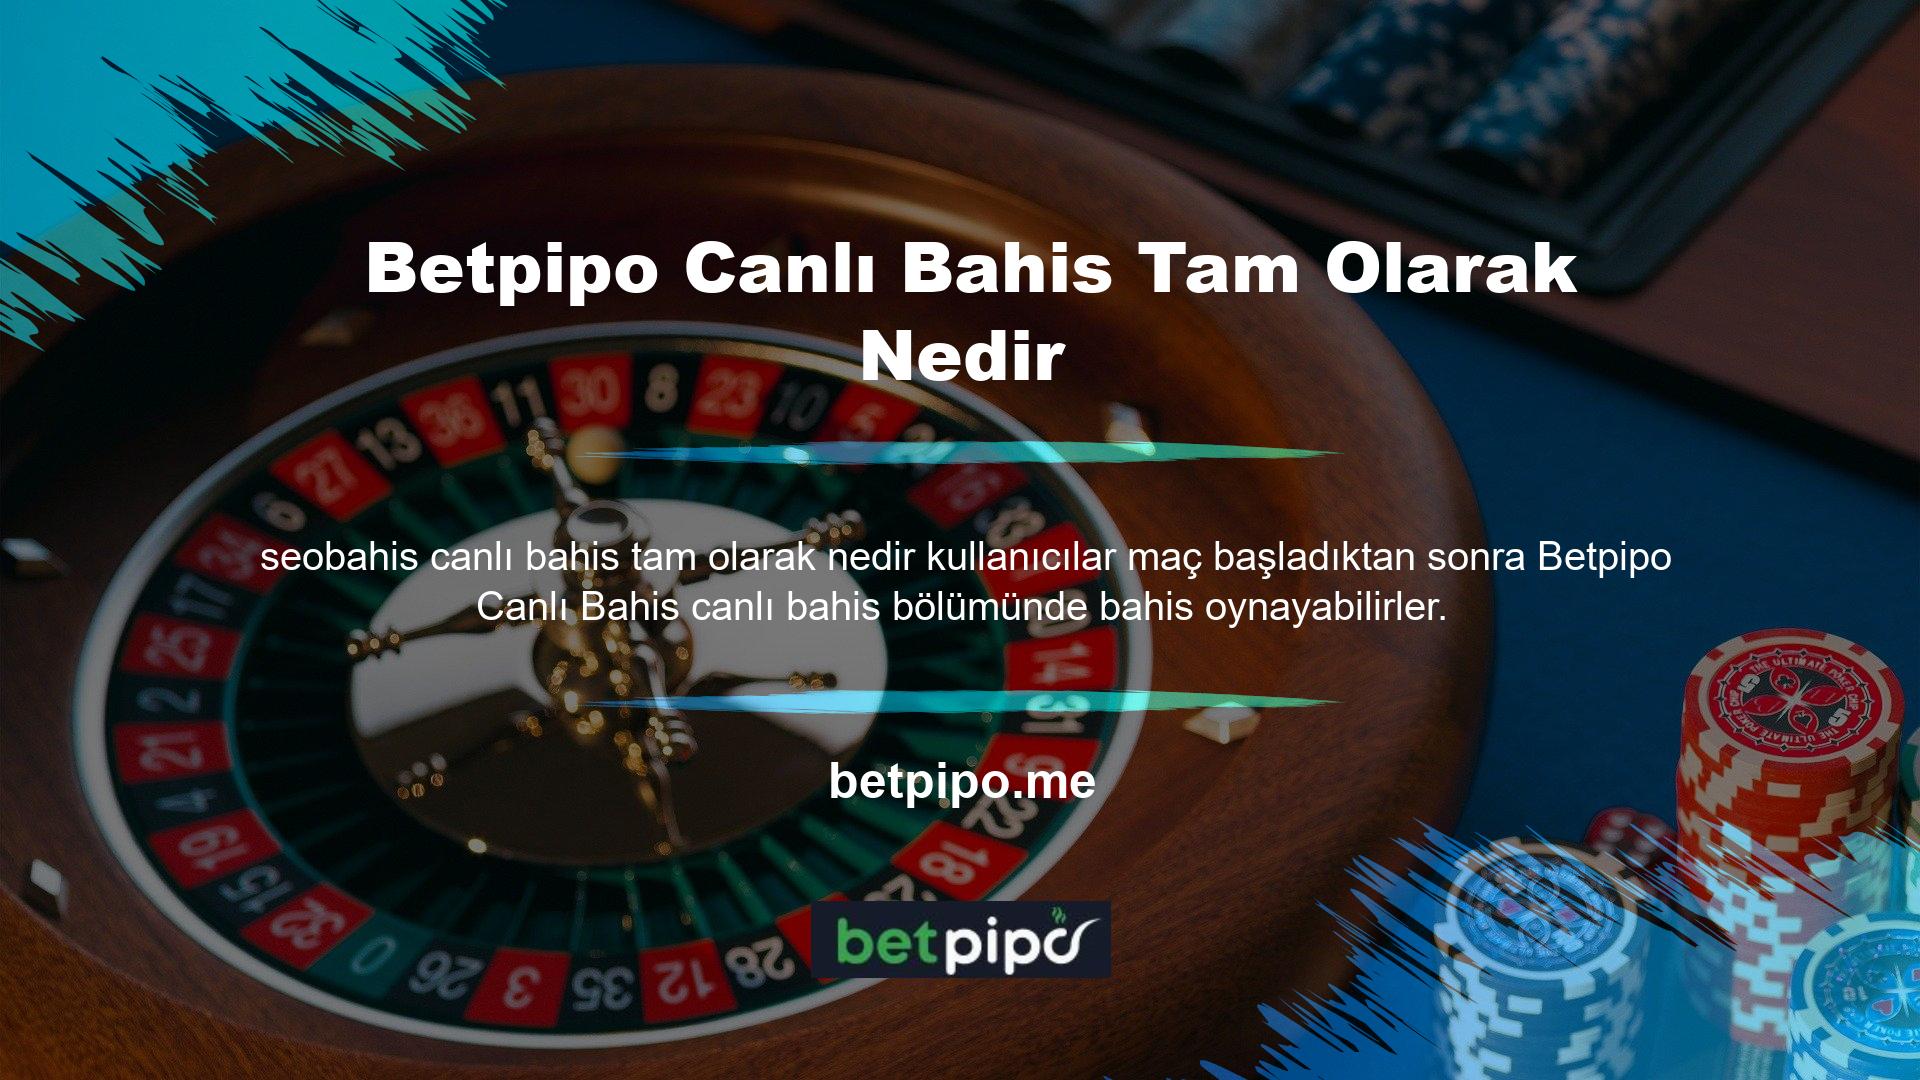 Bu web sitesi ile canlı bahis yapabilir ve profesyonel olarak Betpipo bahislerine katılabilirsiniz